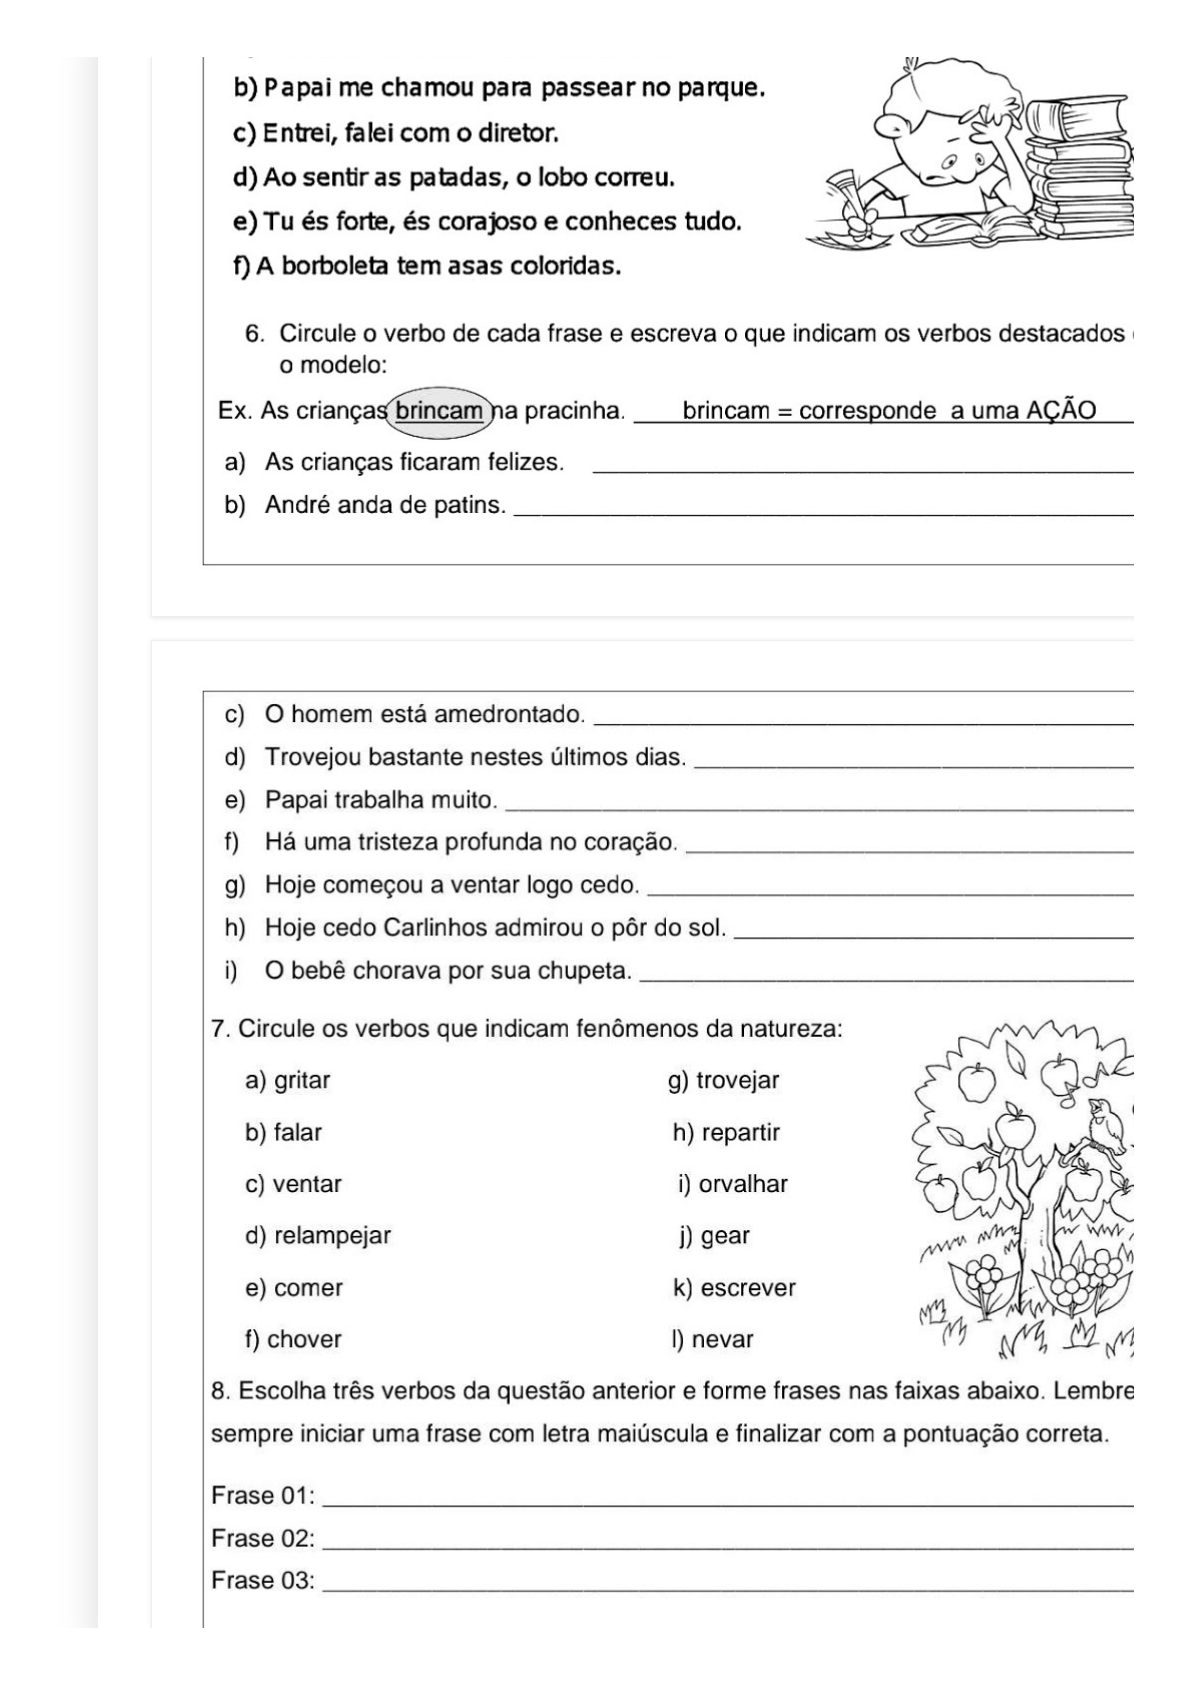 Atividade 2 da tabuada viajante (5º ano) worksheet